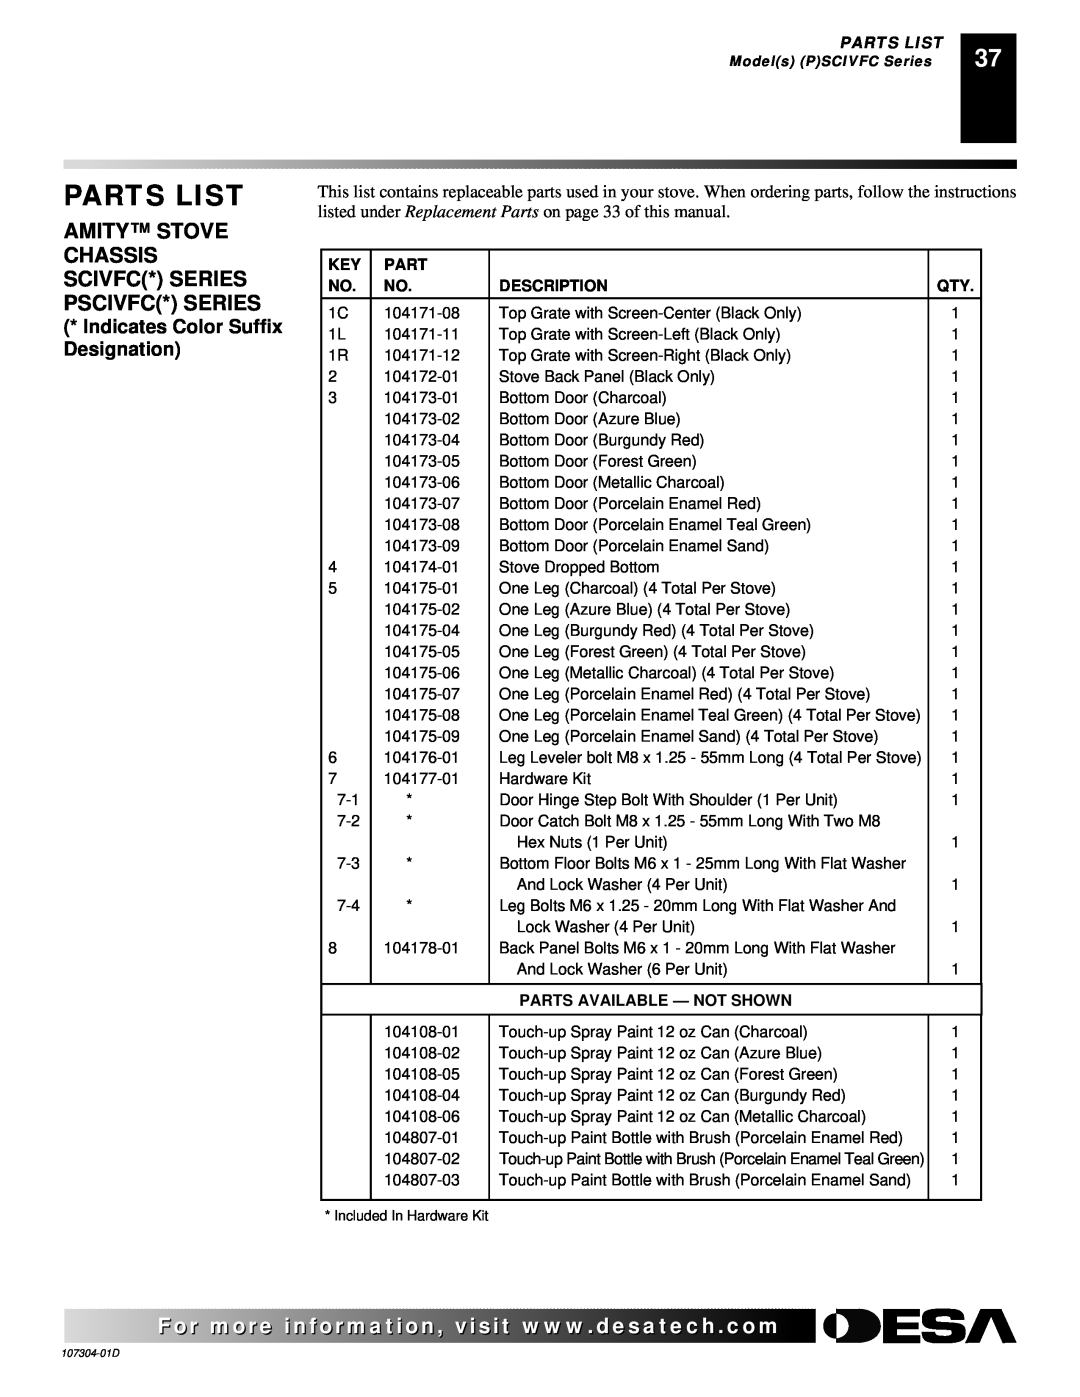 Desa SDVBNC, SDVBPC installation manual Parts List, Description, Parts Available - Not Shown 